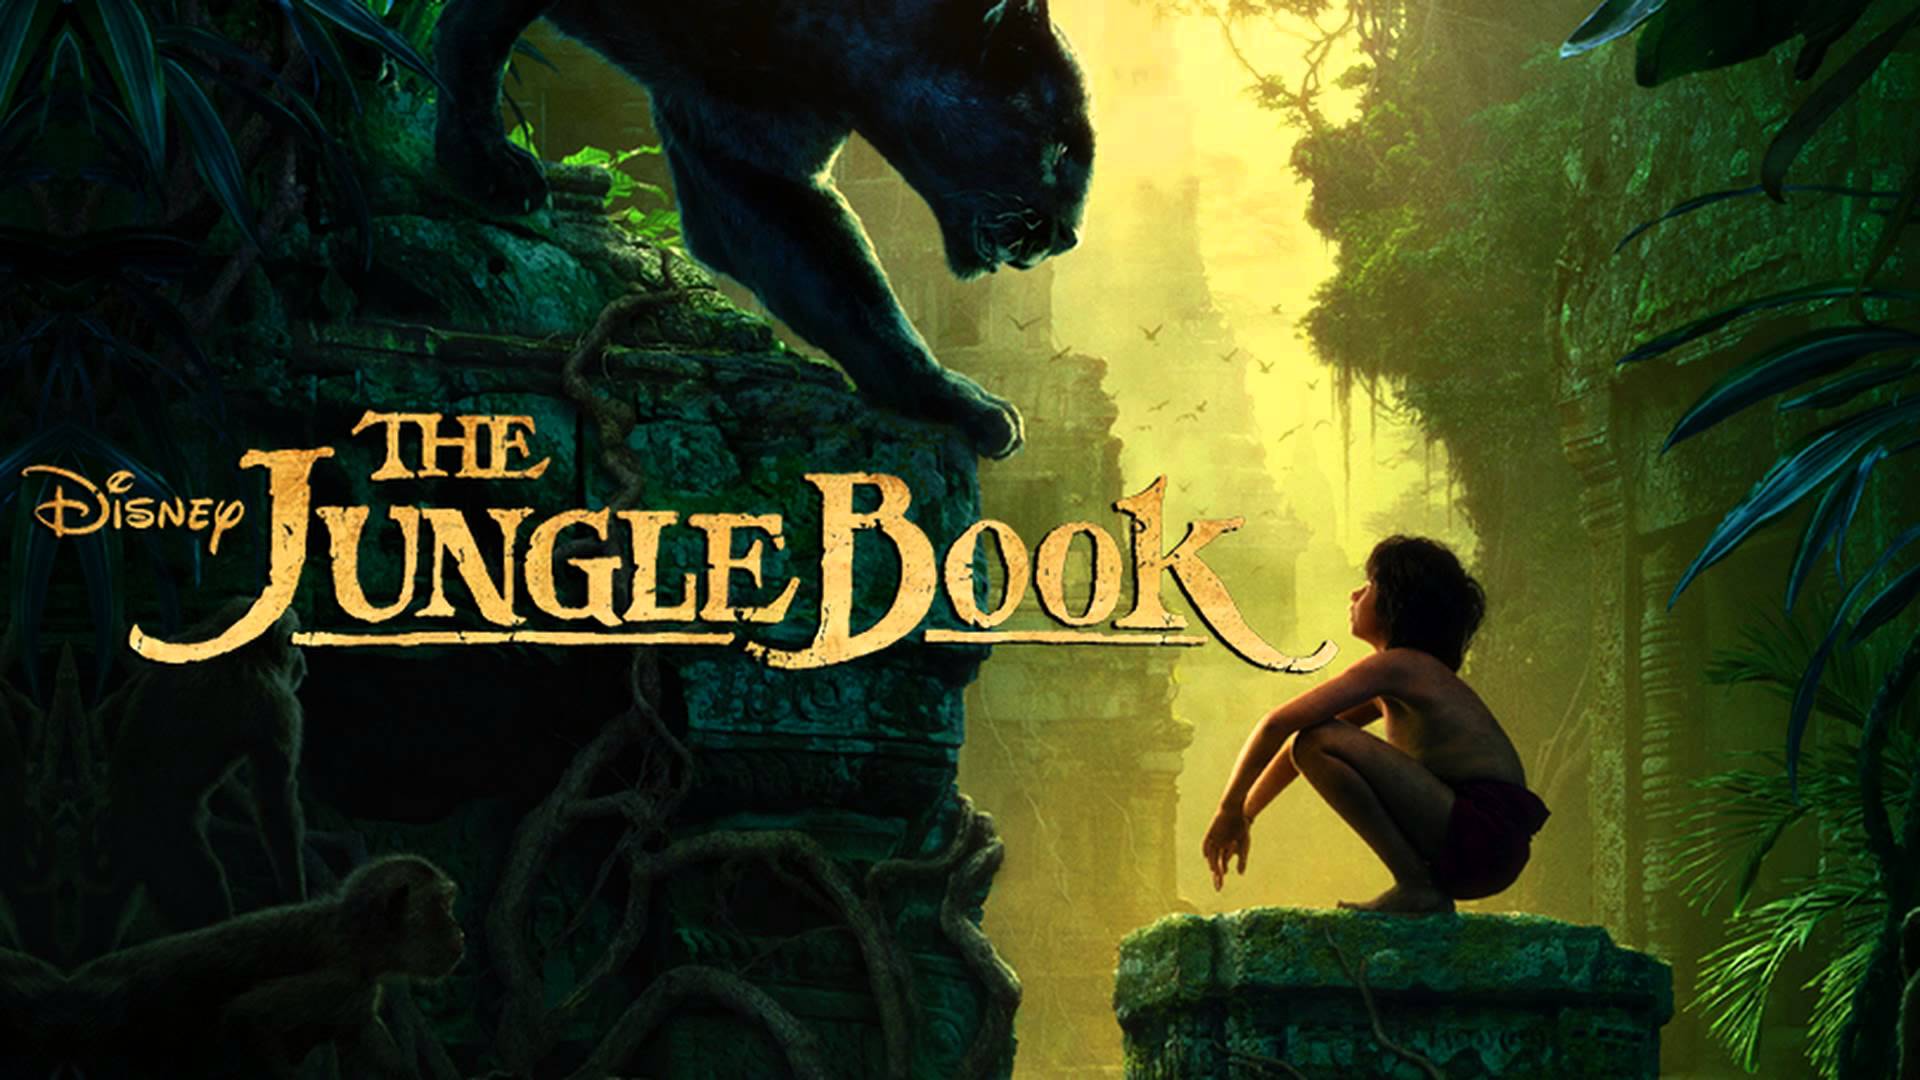 The Jungle Book (2016) wallpaper, Movie, HQ The Jungle Book